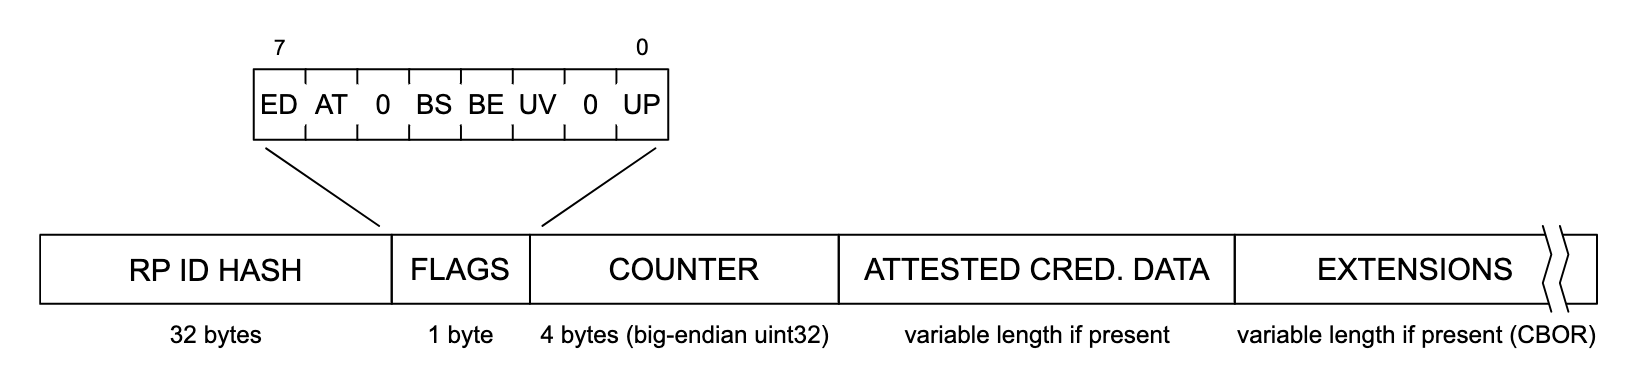 Darstellung der Authentifizierungsdatenstruktur. Von links nach rechts liest jeder Abschnitt der Datenstruktur „RP ID HASH“ (32 Byte), „FLAGS“ (1 Byte), „COUNTER“ (4 Byte, Big-Endian uint32) und „ATTESTE CRED“. DATA&#39; (variable Länge, falls vorhanden) und &#39;EXTENSIONS&#39; (variable Länge, falls vorhanden (CBOR)). Der Abschnitt &quot;FLAGS&quot; wird erweitert und zeigt eine Liste potenzieller Flags an, die von links nach rechts beschriftet sind: &quot;ED&quot;, &quot;AT&quot;, &quot;0&quot;, &quot;BS&quot;, &quot;BE&quot;, &quot;UV&quot;, &quot;0&quot; und &quot;UP&quot;.